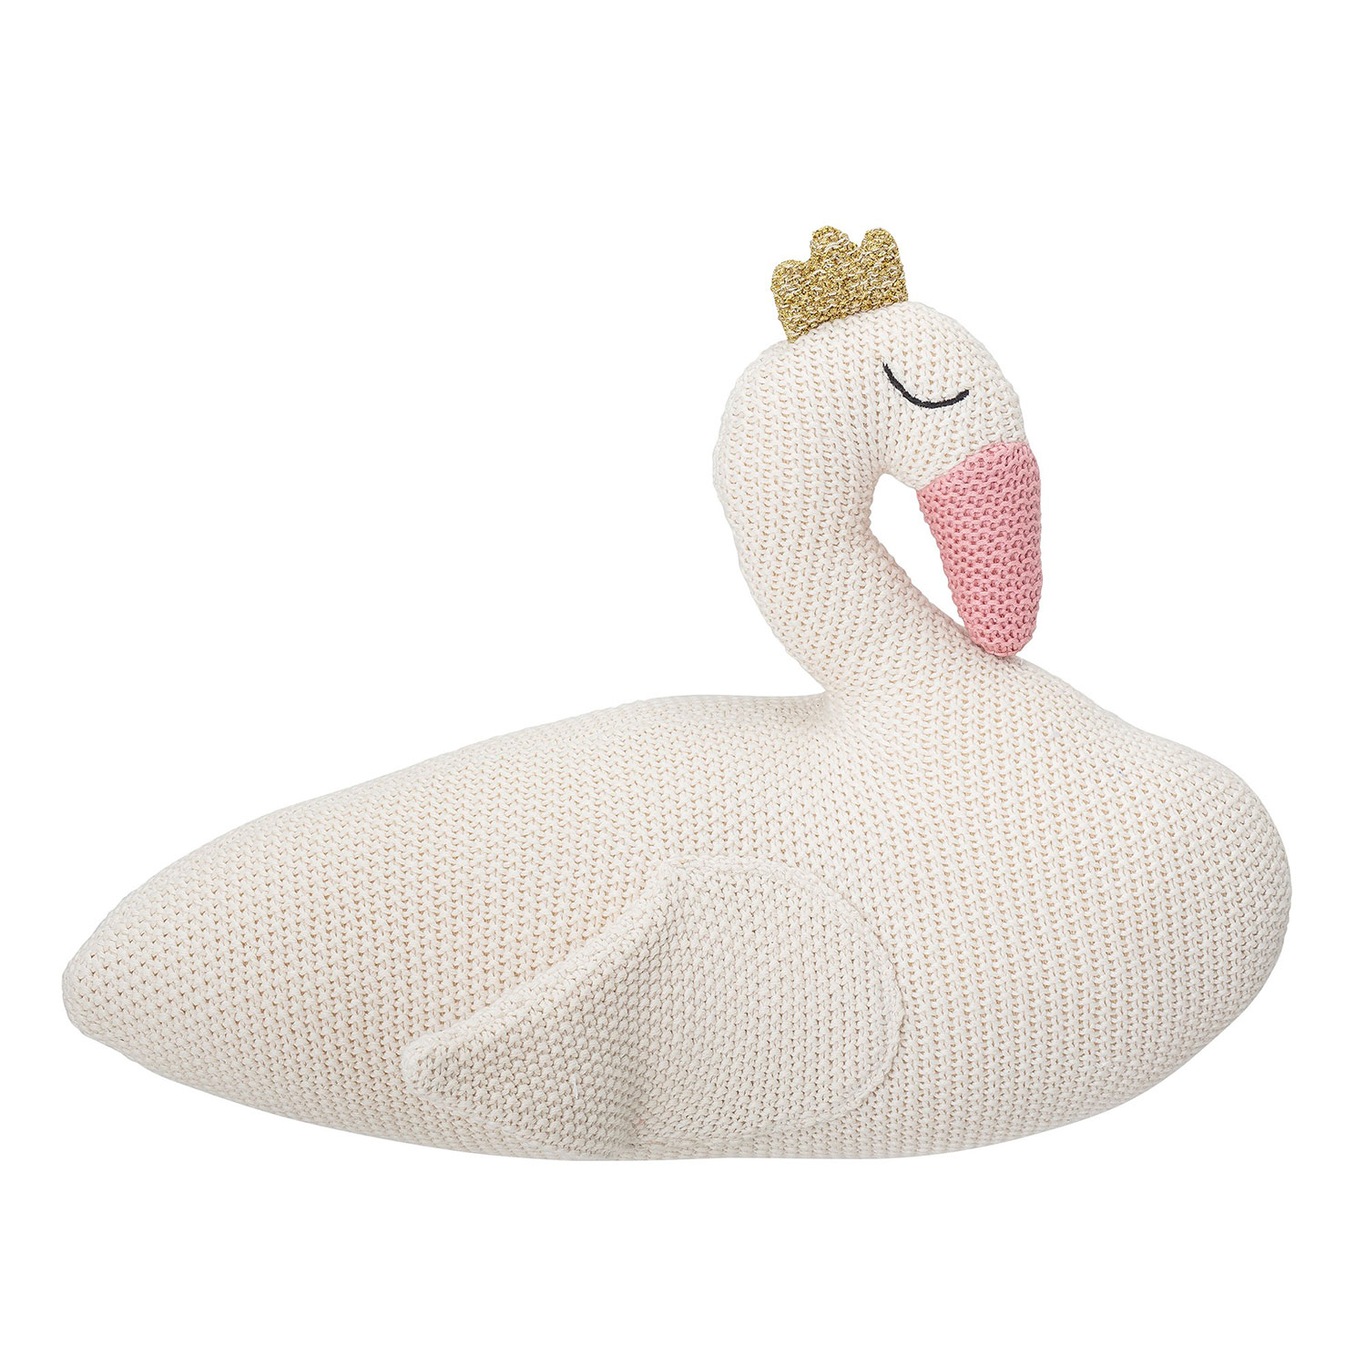 Swan Soft Toy